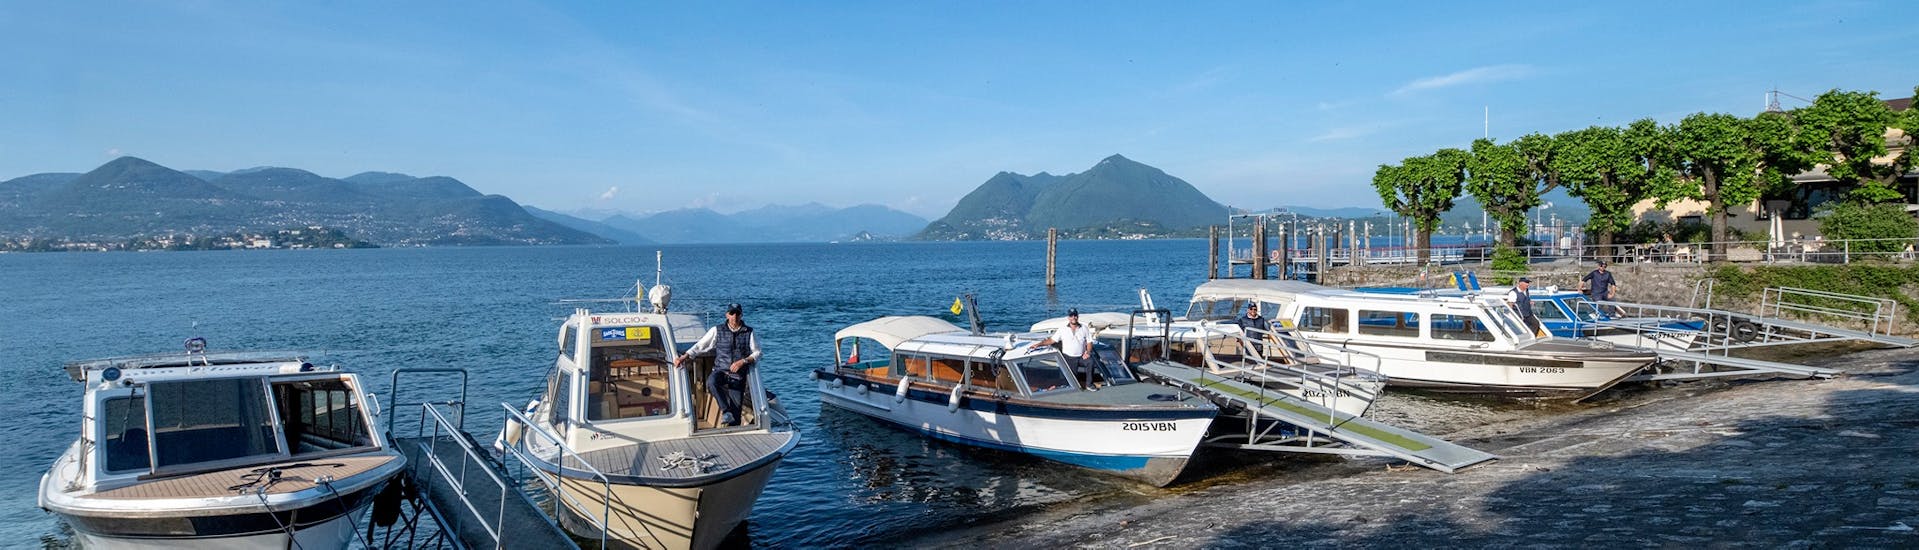 Vue des bateaux utilisés pour le transfert en bateau de Stresa à Isola Pescatori avec Lake Tours Stresa.